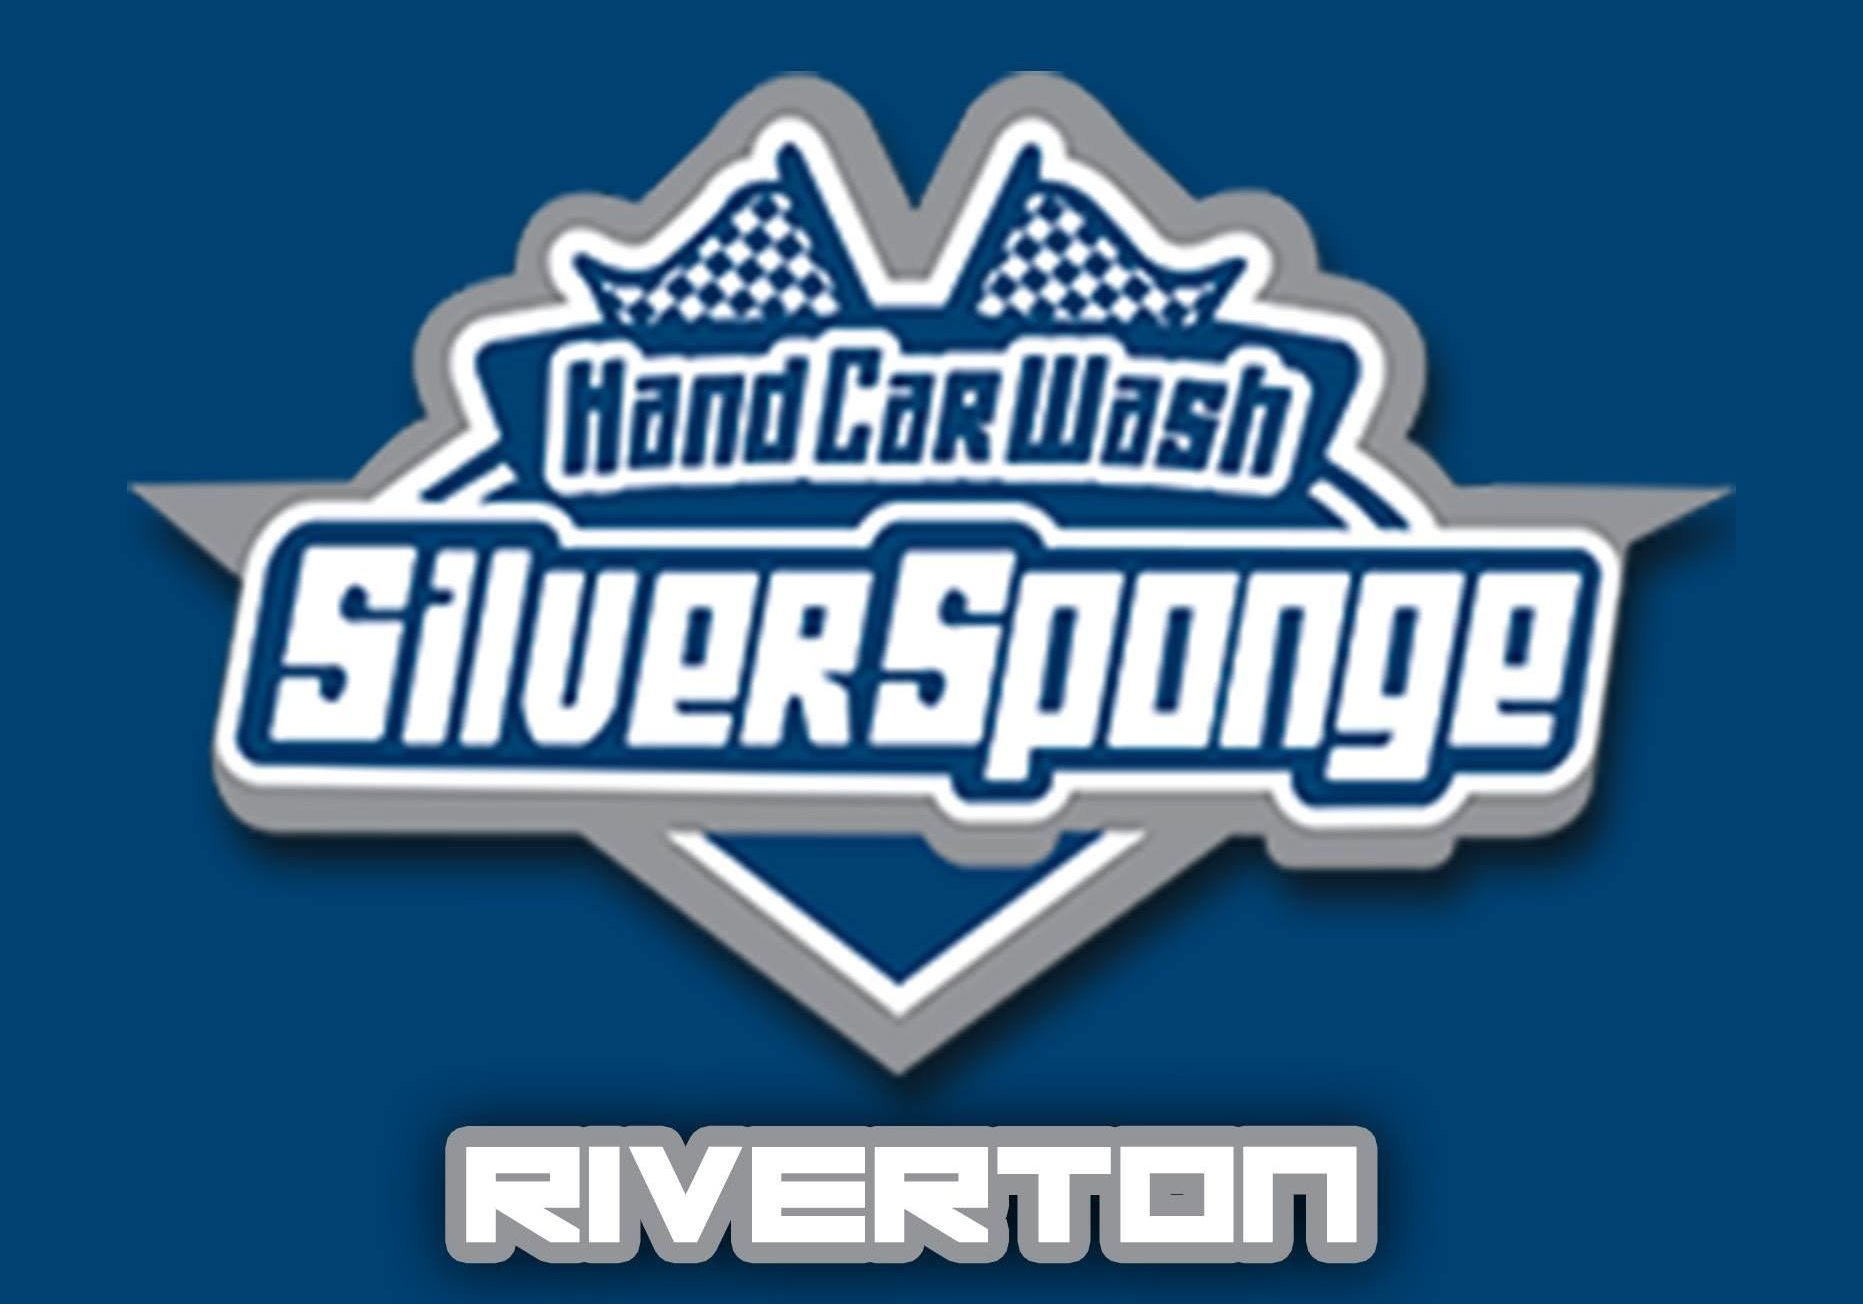 Silver Sponge - Riverton